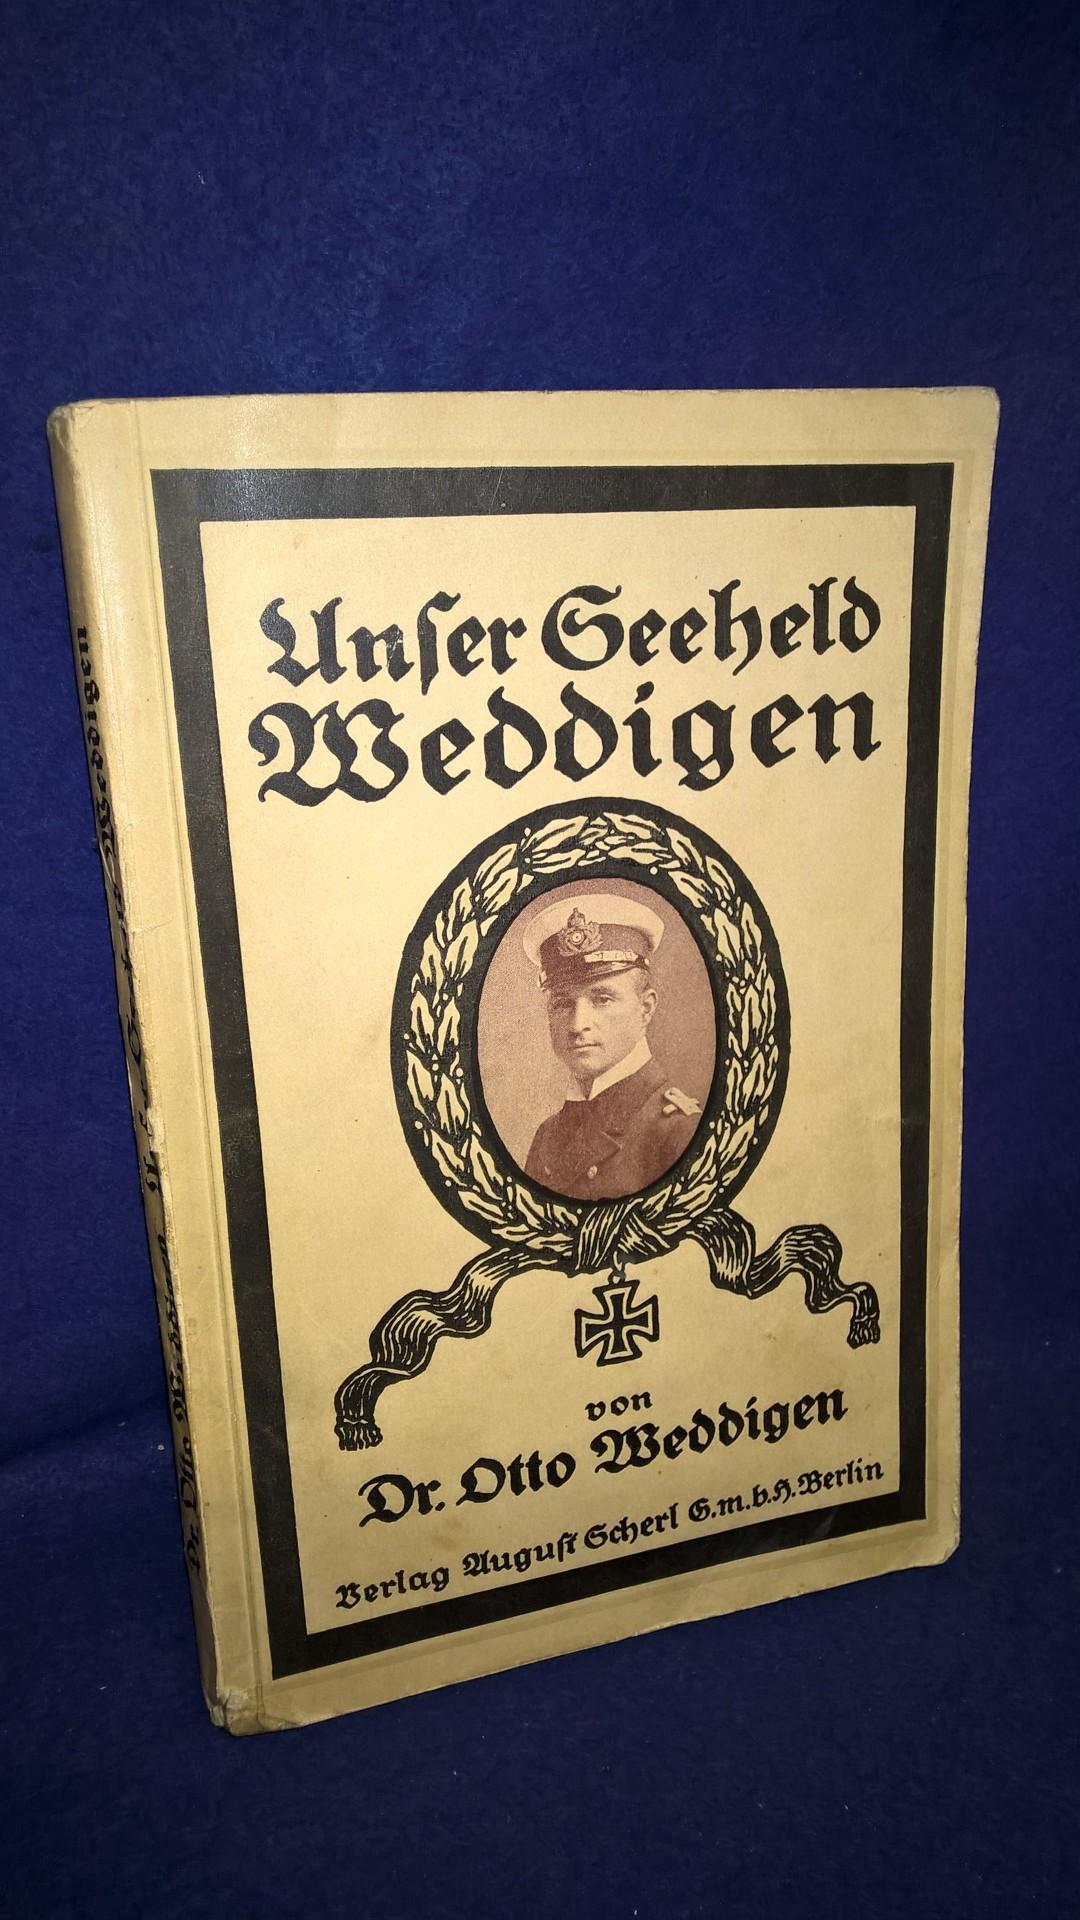 Unser Seeheld Weddigen - ein Leben und seine Taten dem deutschen Volke erzählt.